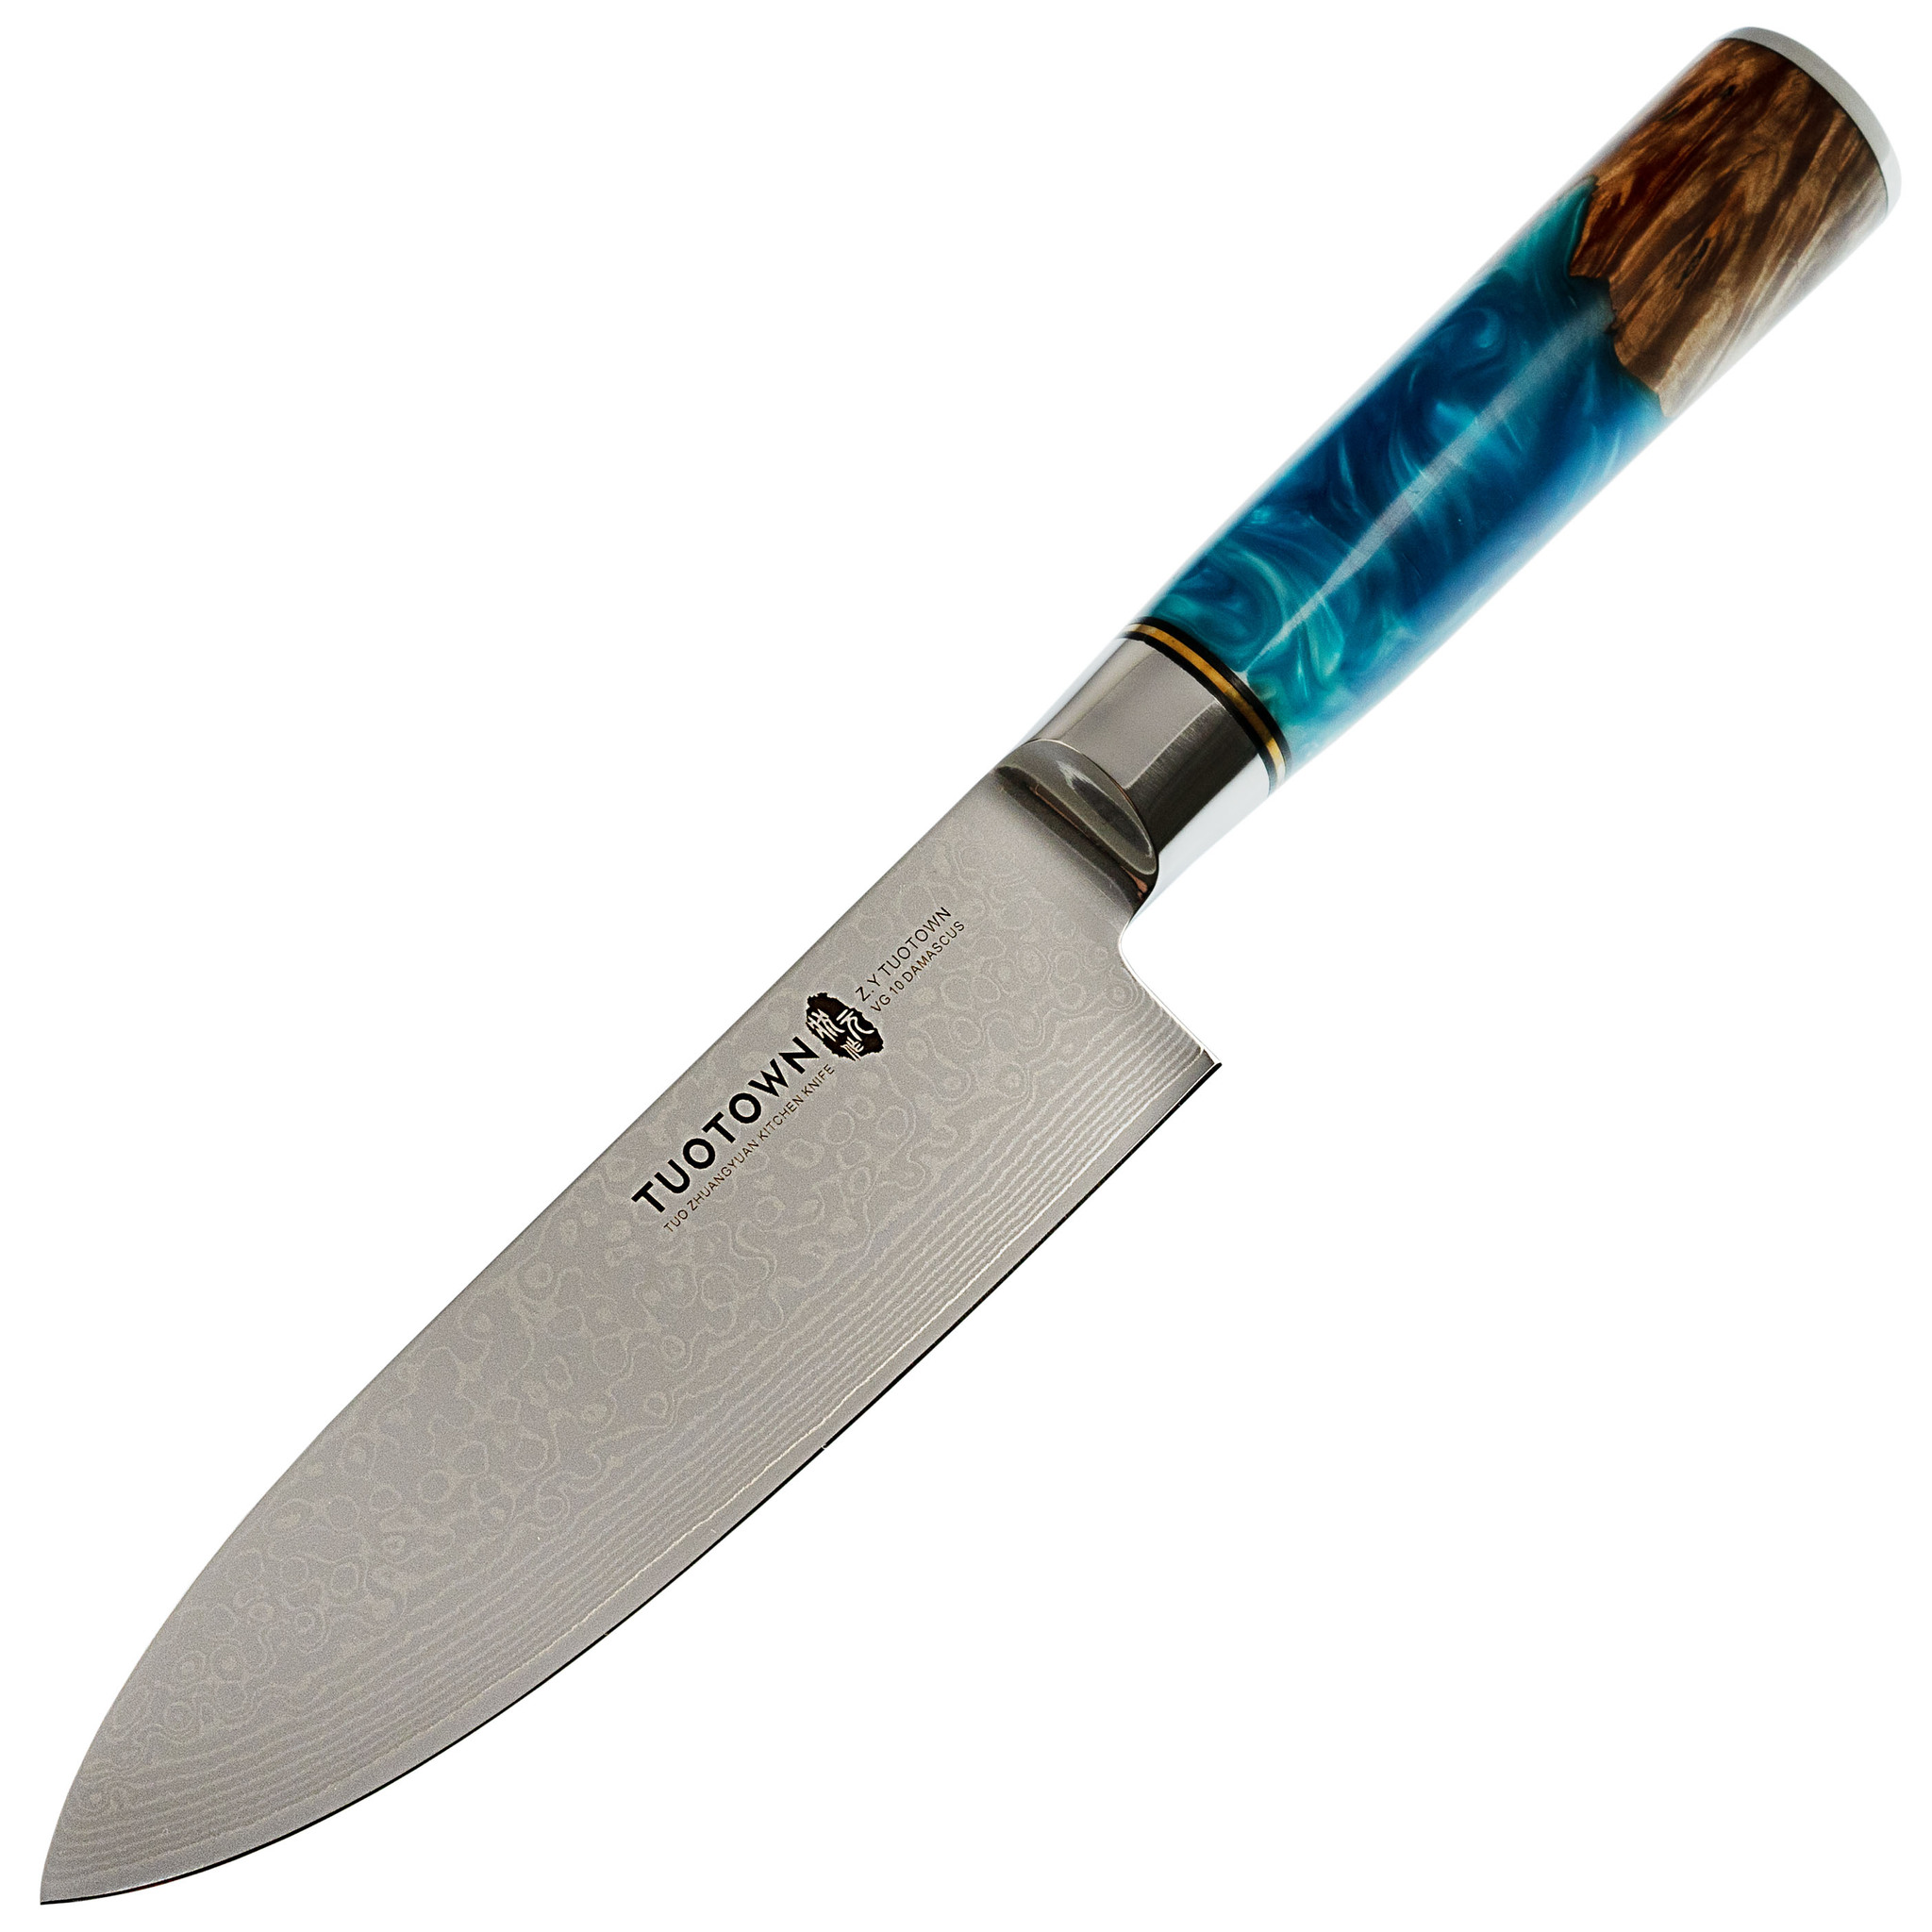 Нож кухонный Tuotown DM003, сталь VG-10 Damascus, рукоять дерево/эпоксидка